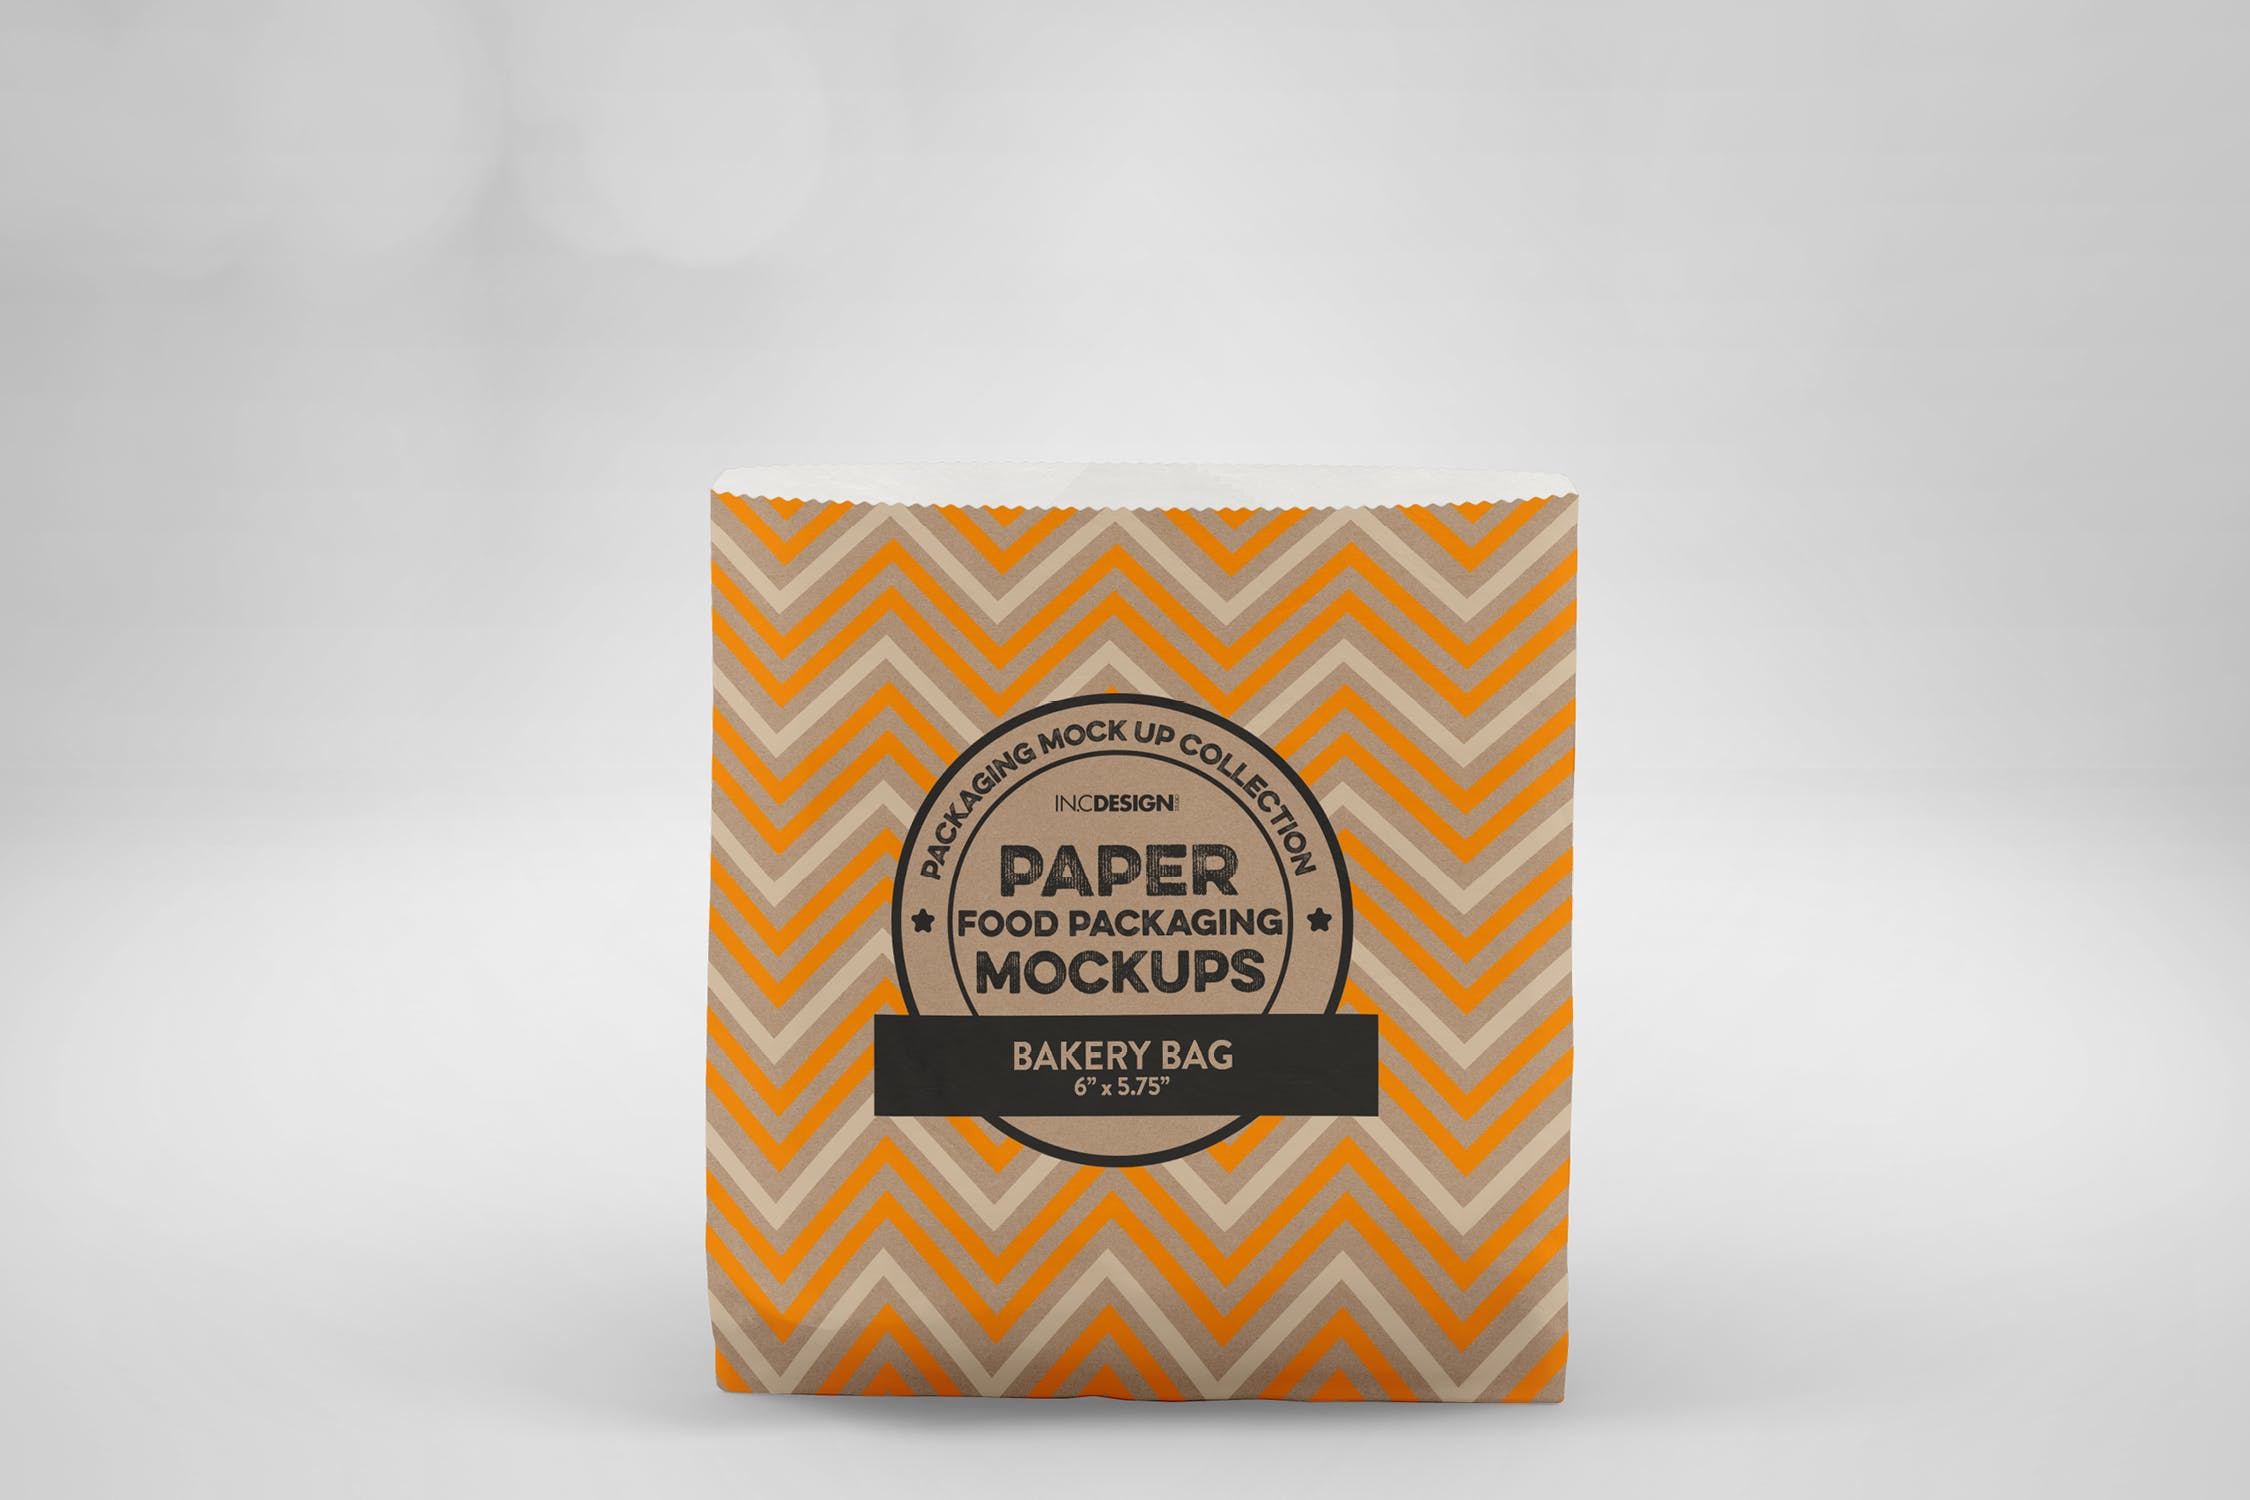 面包外带包装纸袋设计图第一素材精选 Flat Bakery Bag Packaging Mockup插图(2)